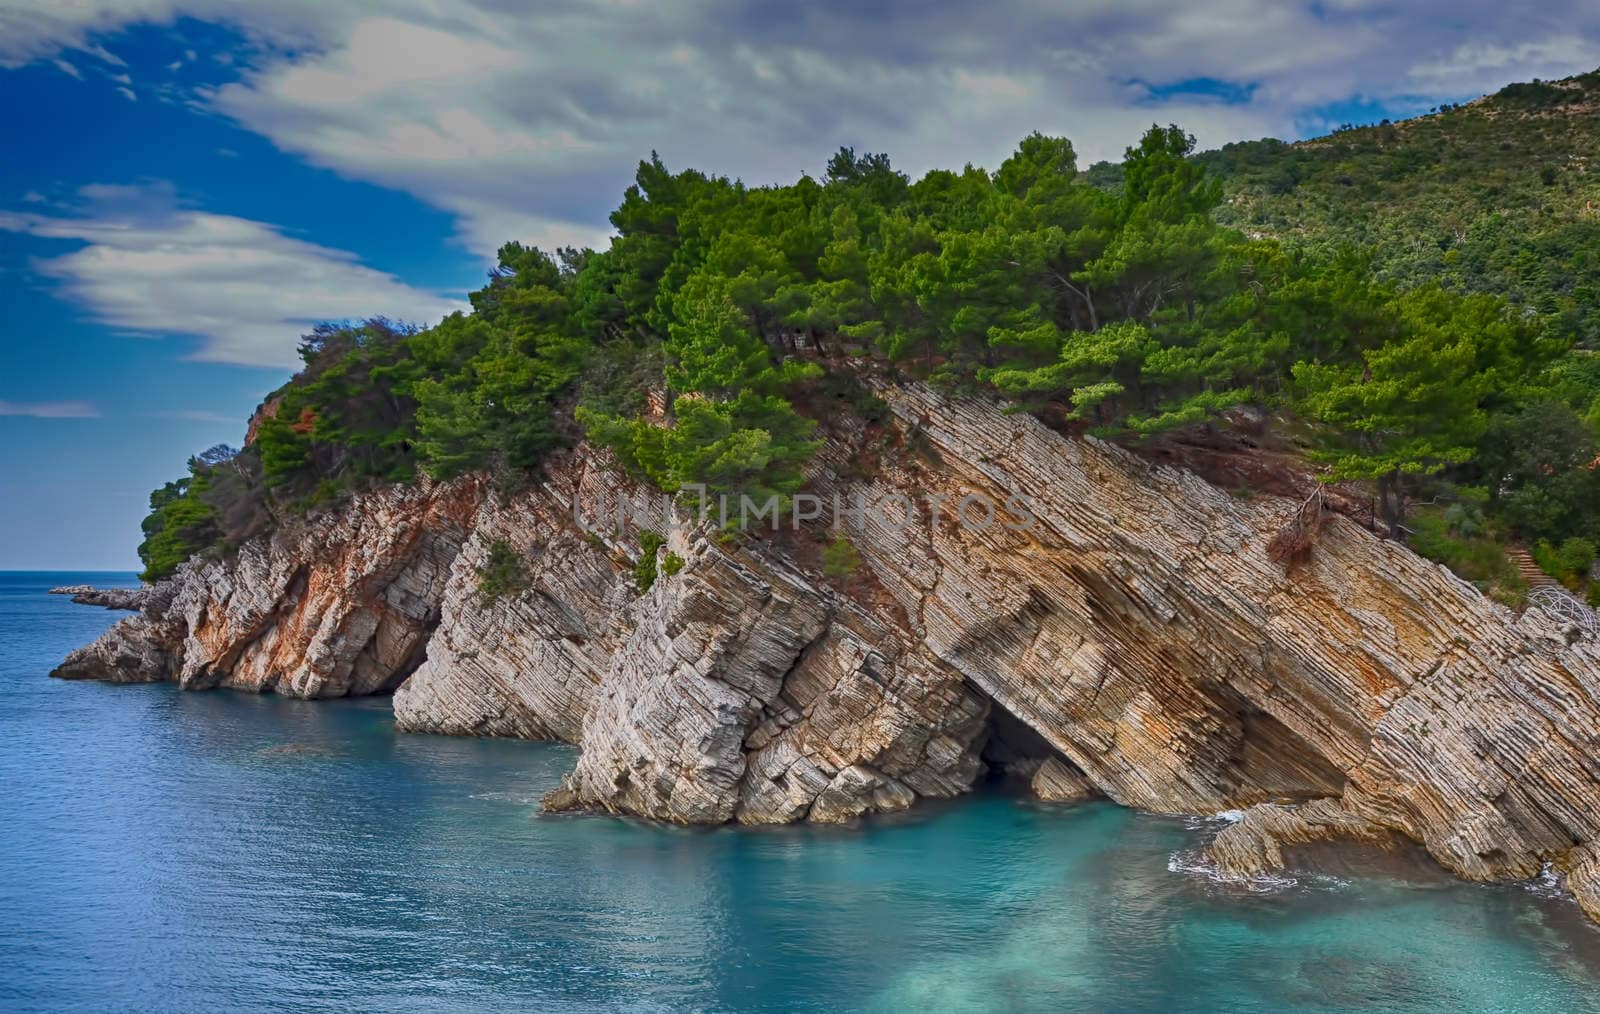 Coastal rocks with pine trees. Adriatic Sea by Nikola30